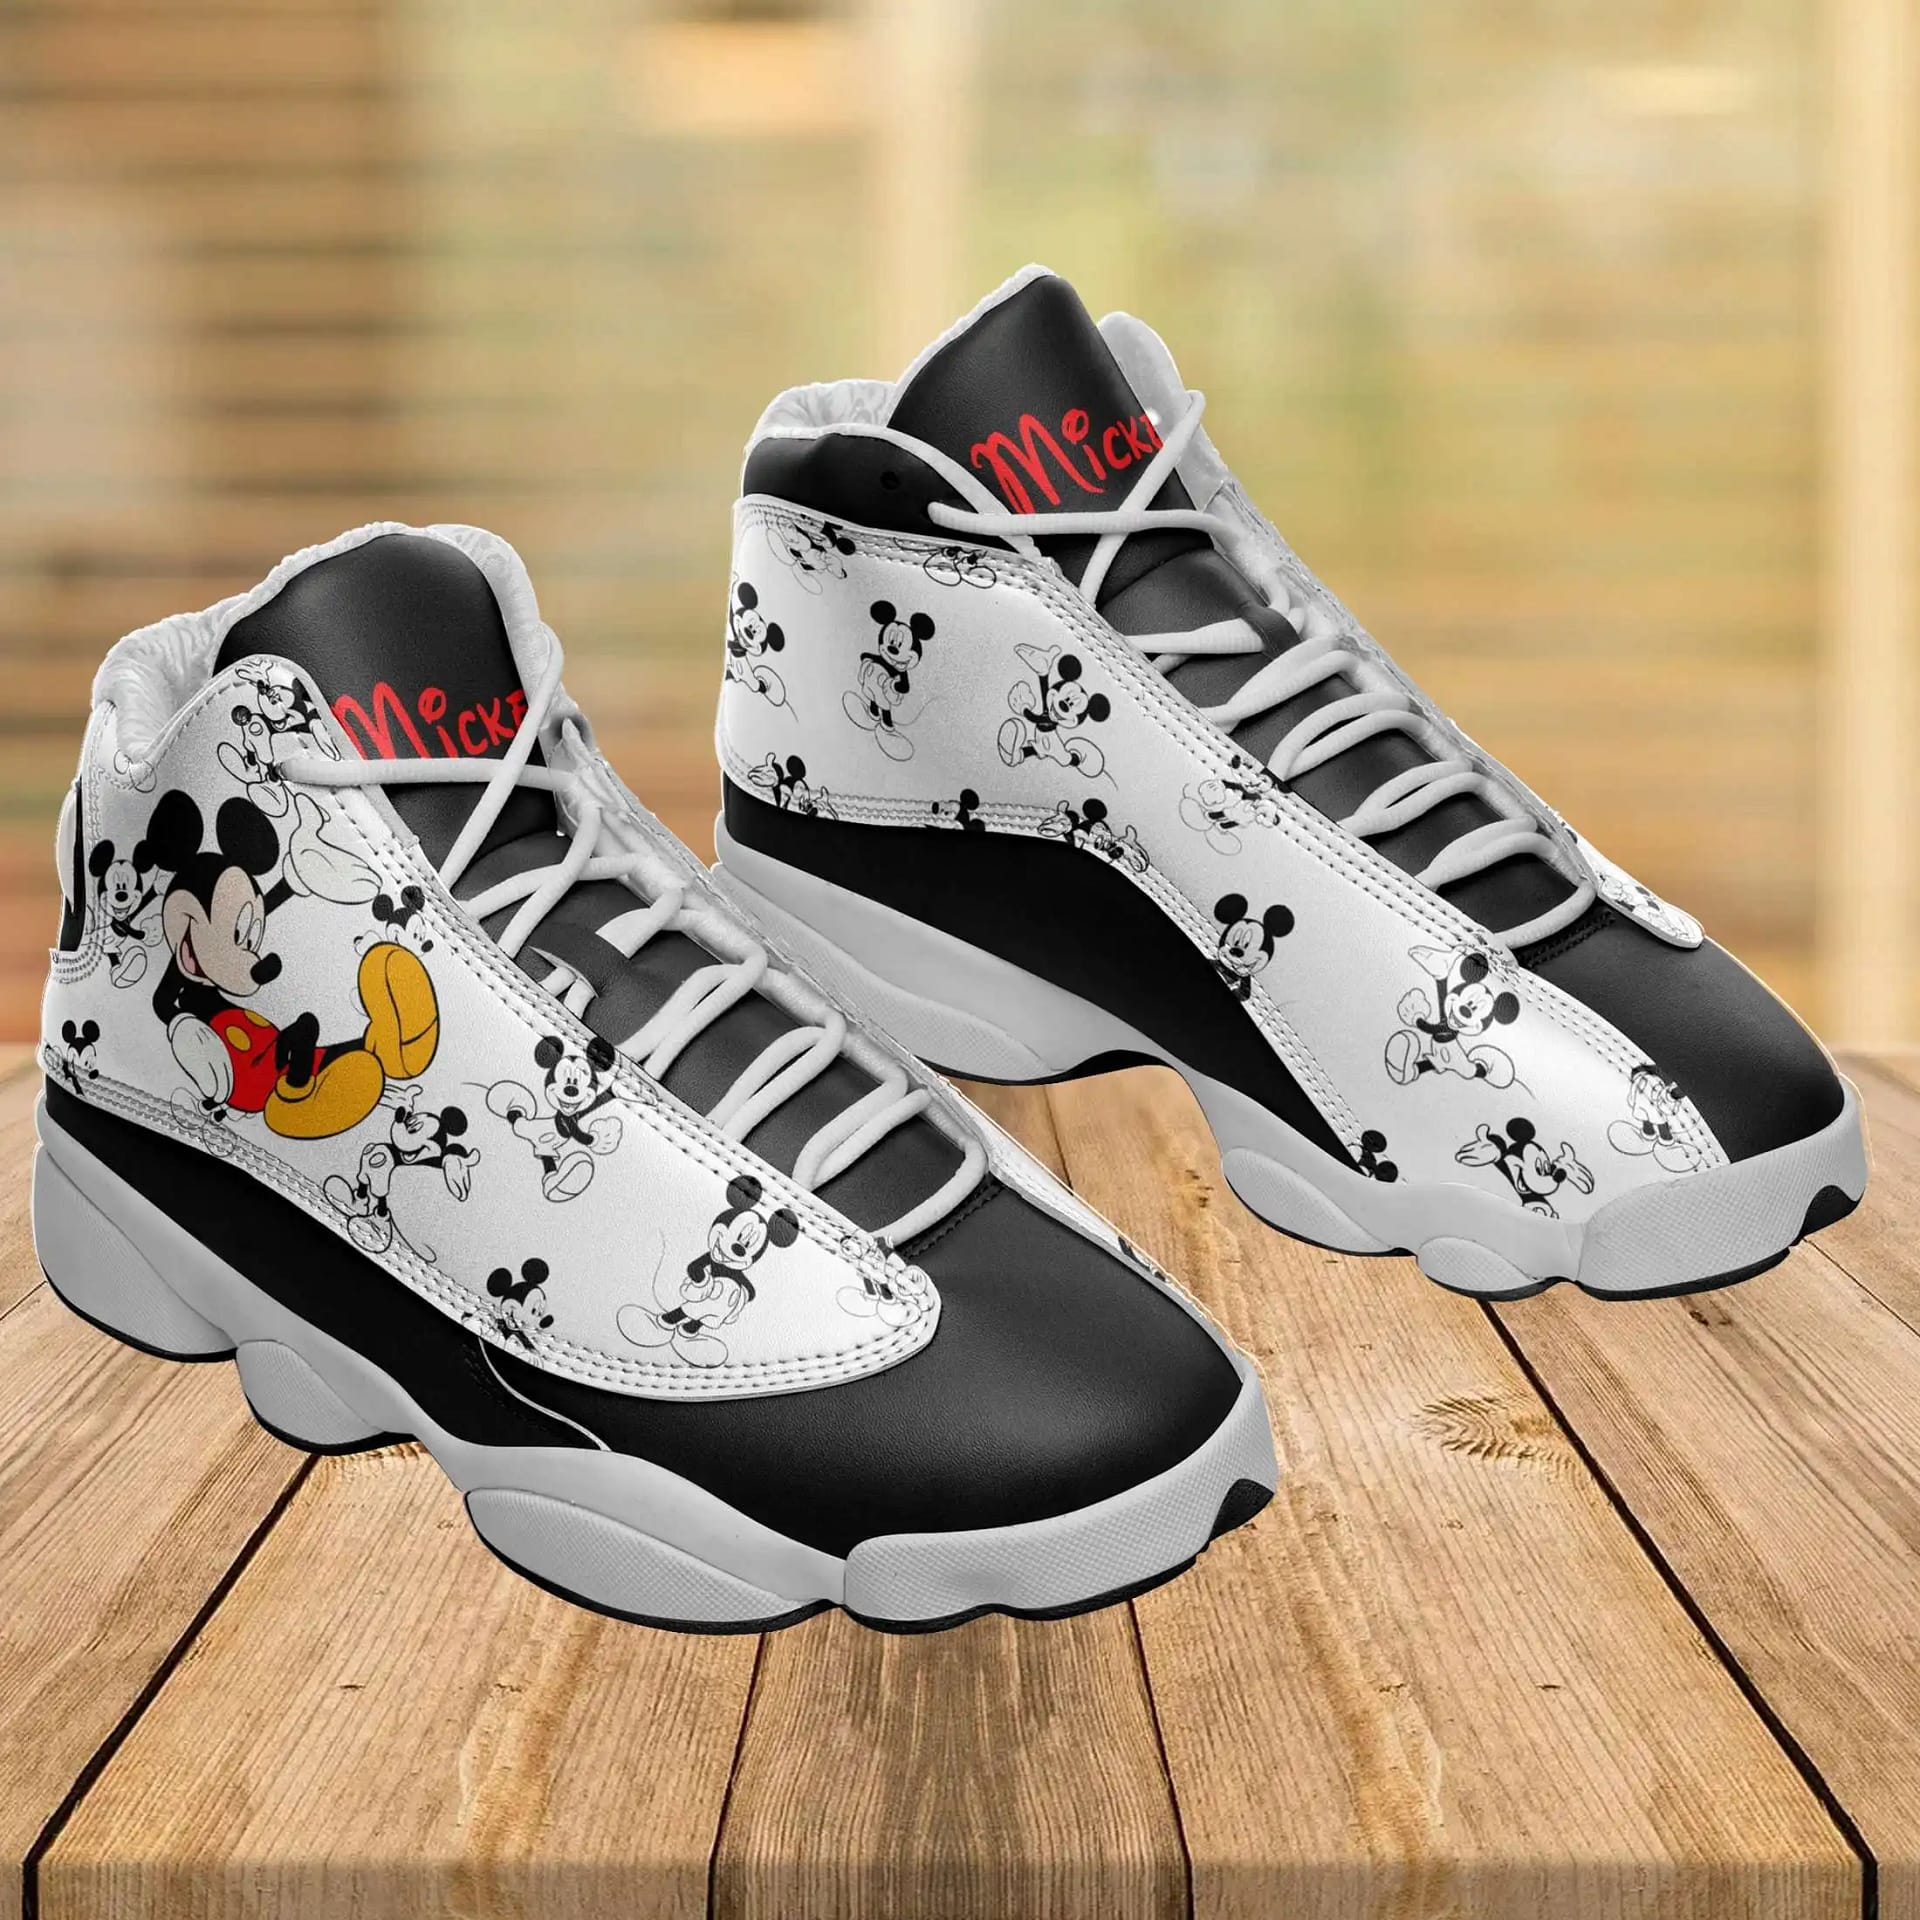 Autism Awareness Custom No18 Air Jordan 13 Shoes - Inktee Store